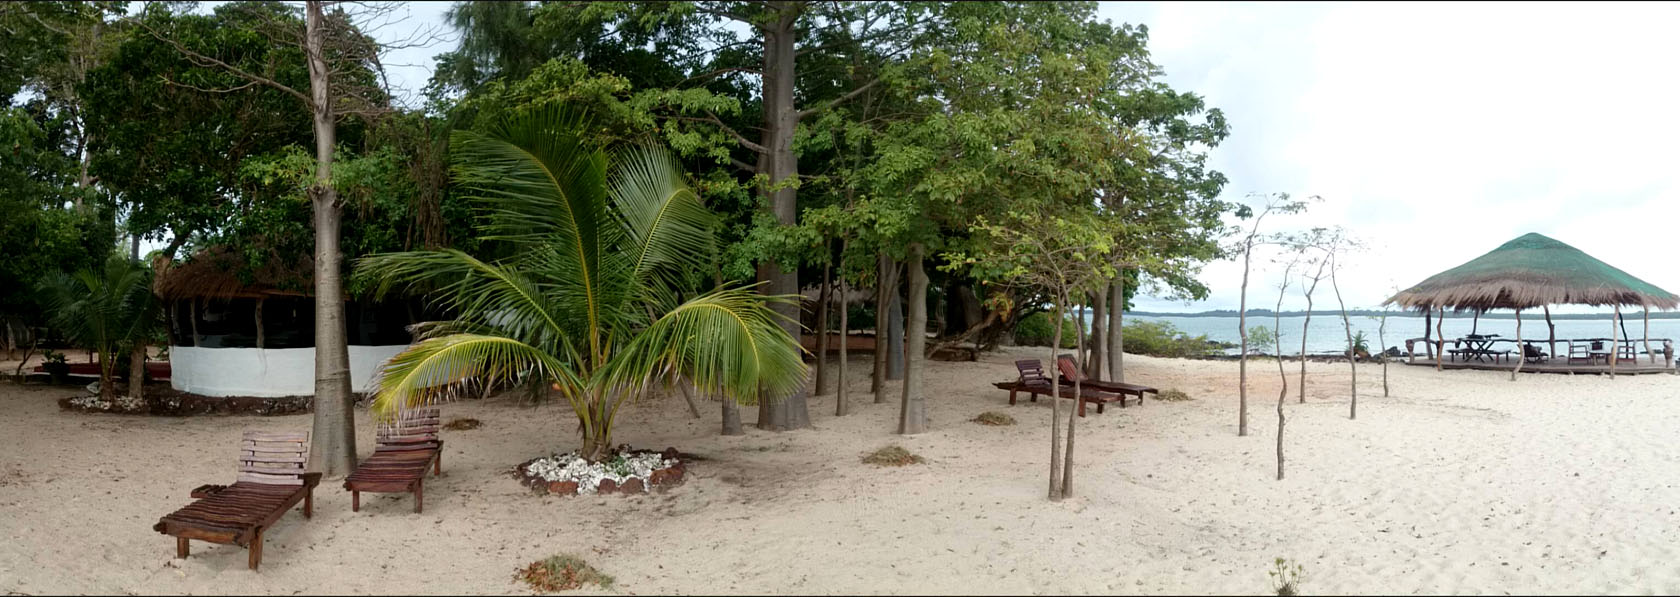 Uma praia linda de areia branca com coqueiros, no arquipelago dos bijagós